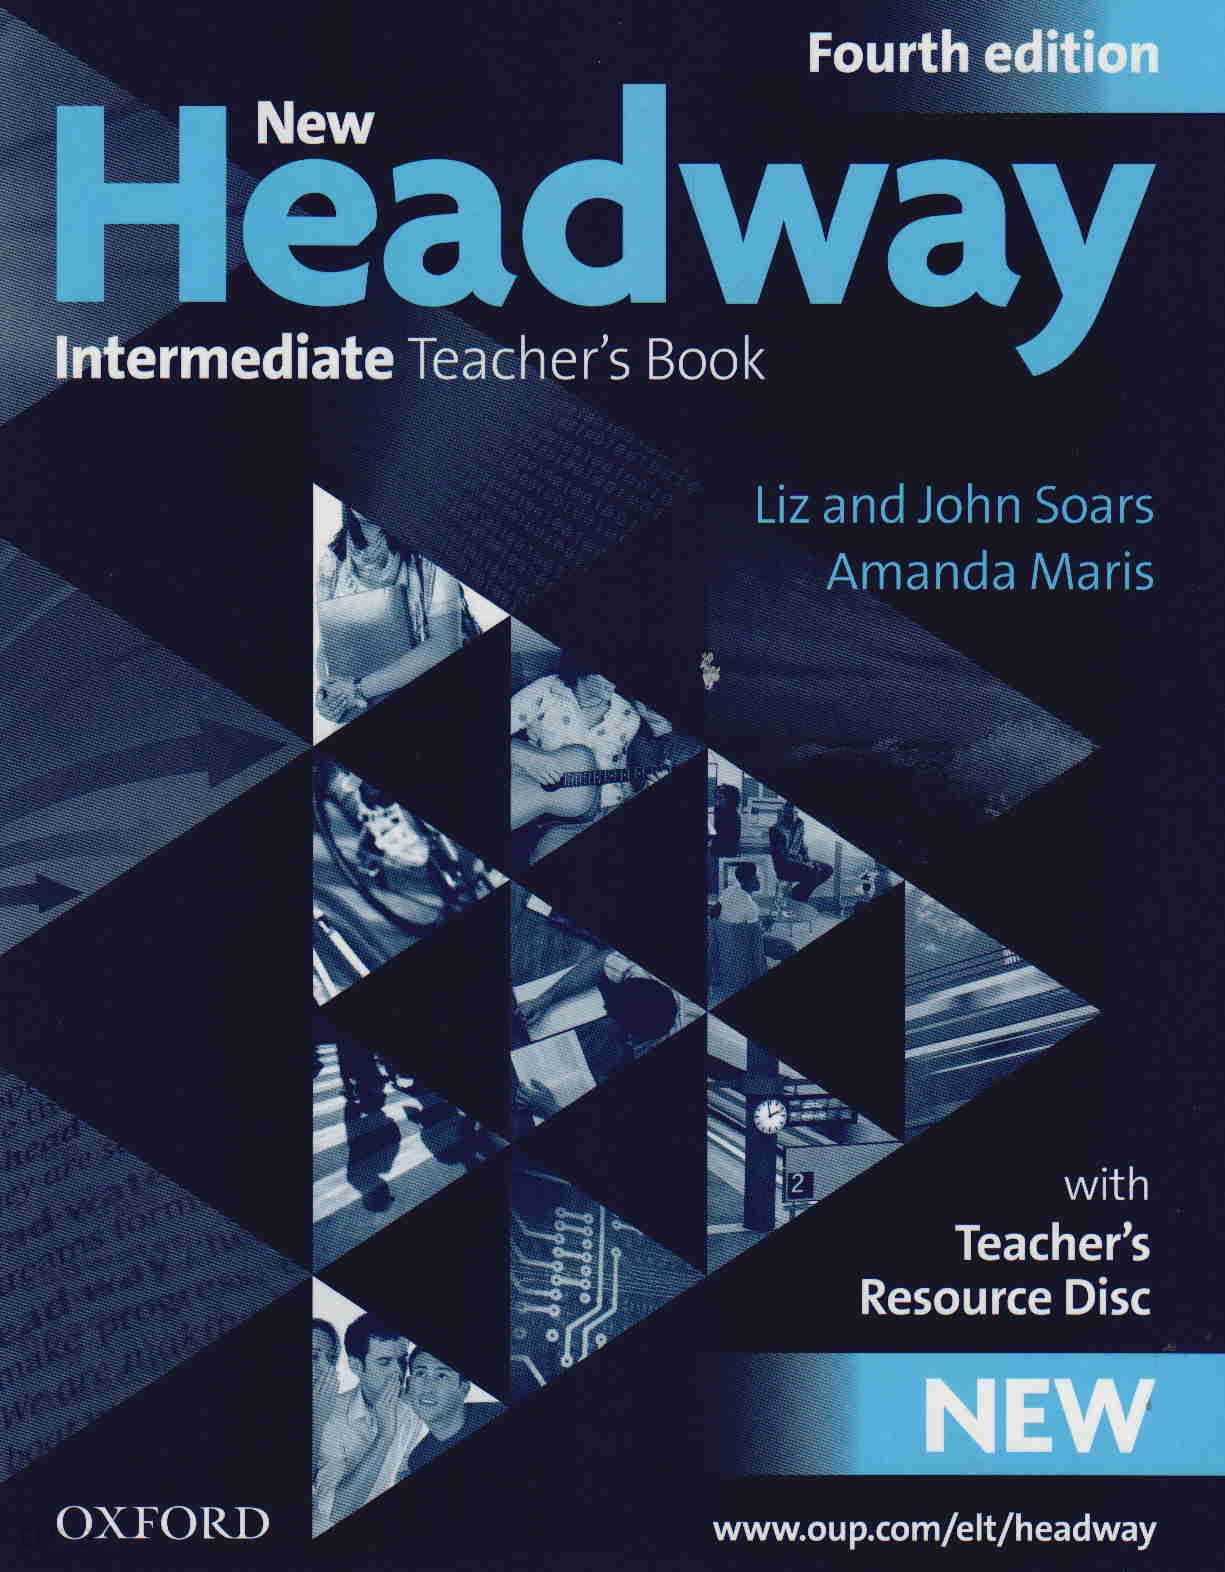 New headway upper intermediate. Headway Intermediate student's book 4th Edition. Headway Intermediate student's book New Edition Liz and John. New Headway 4th Edition. New Headway New Intermediate.